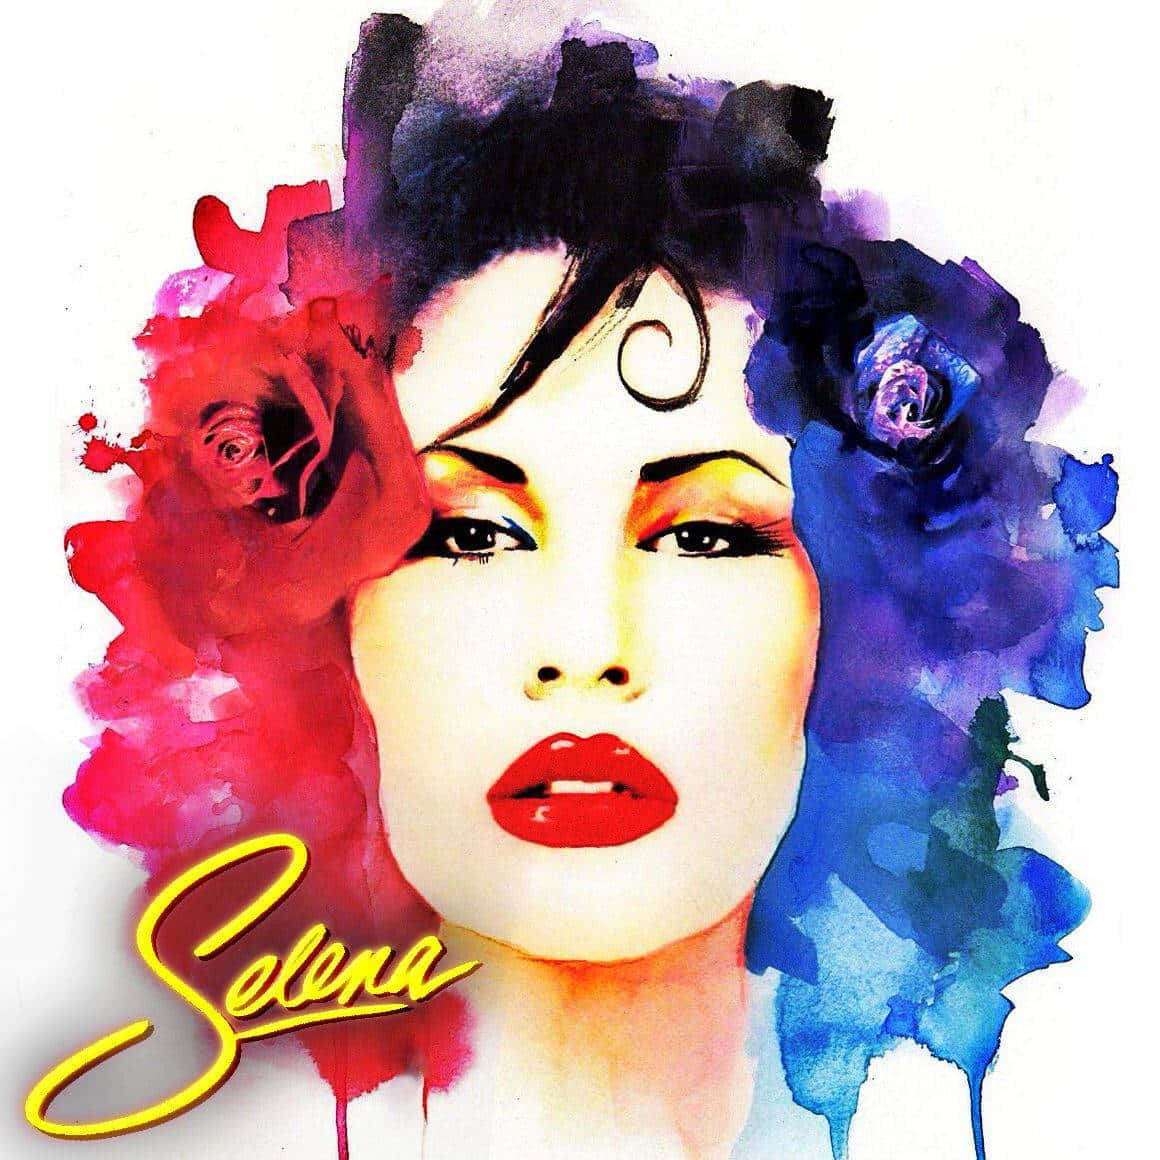 Bliv inspireret af 'Queen of Tejano Music', Selena Quintanilla. Wallpaper